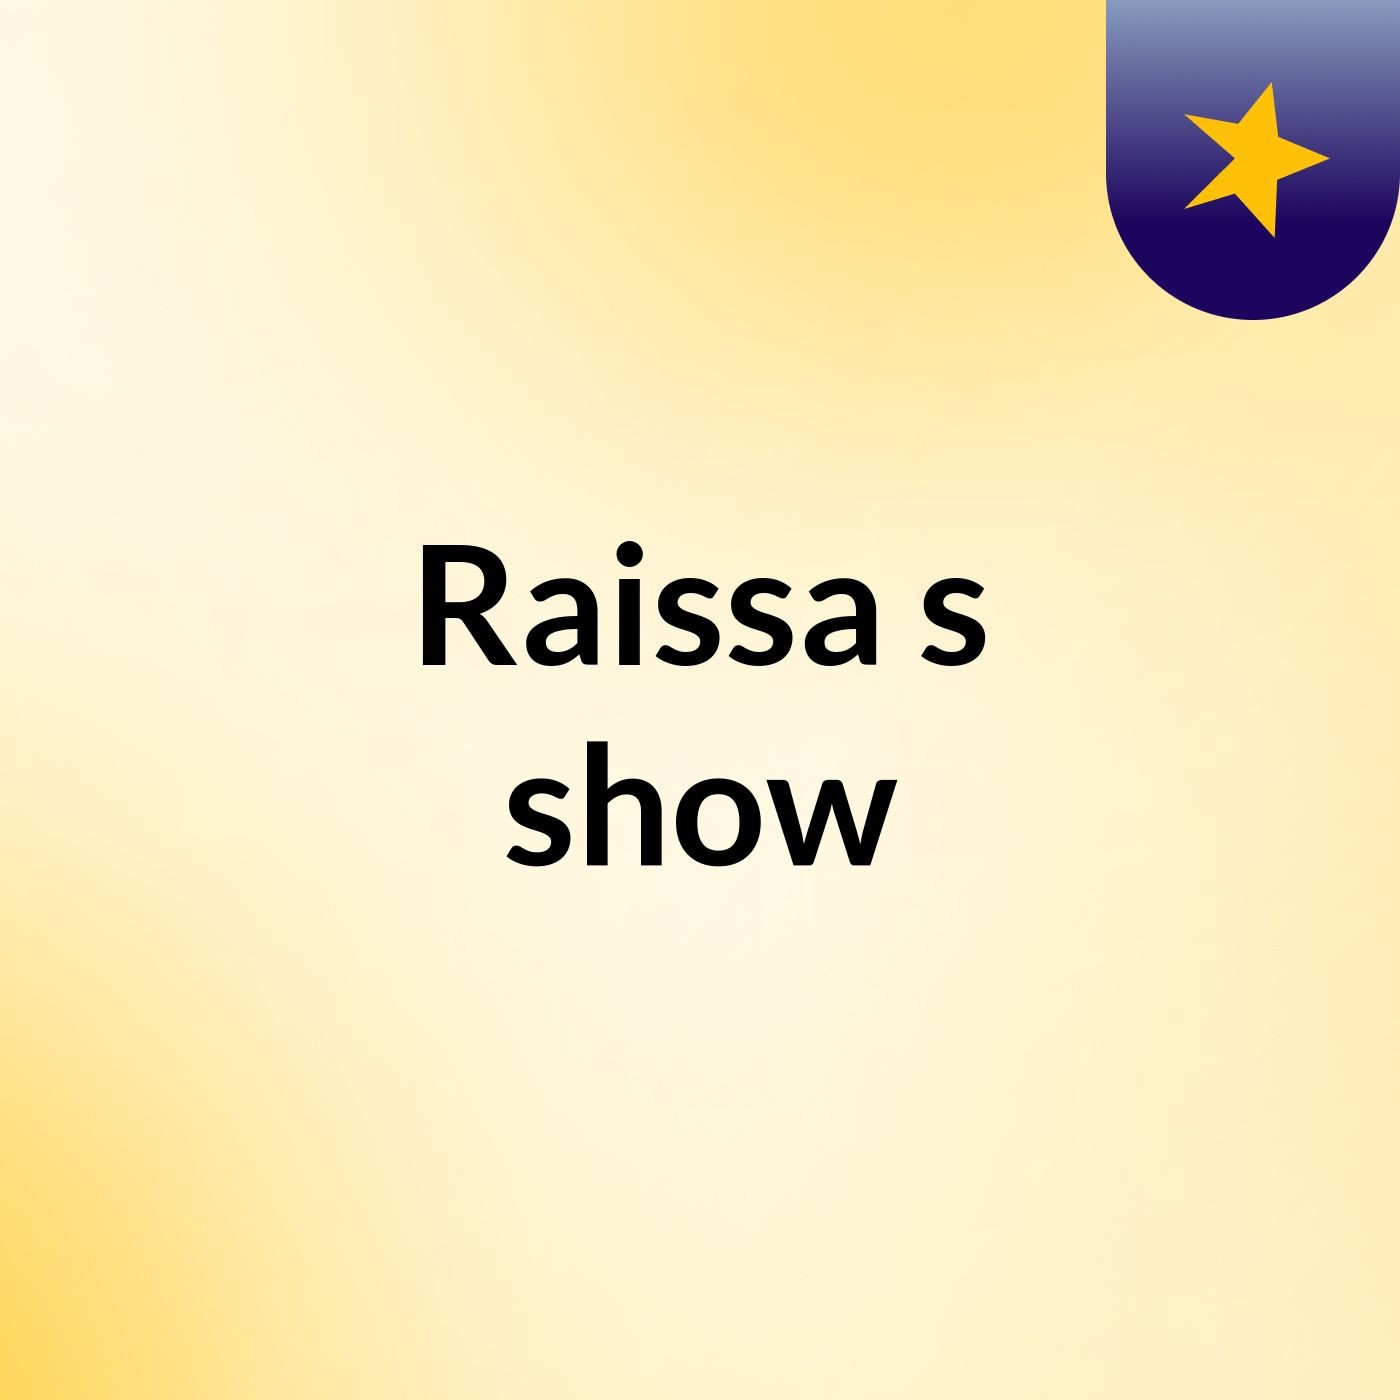 Raissa's show